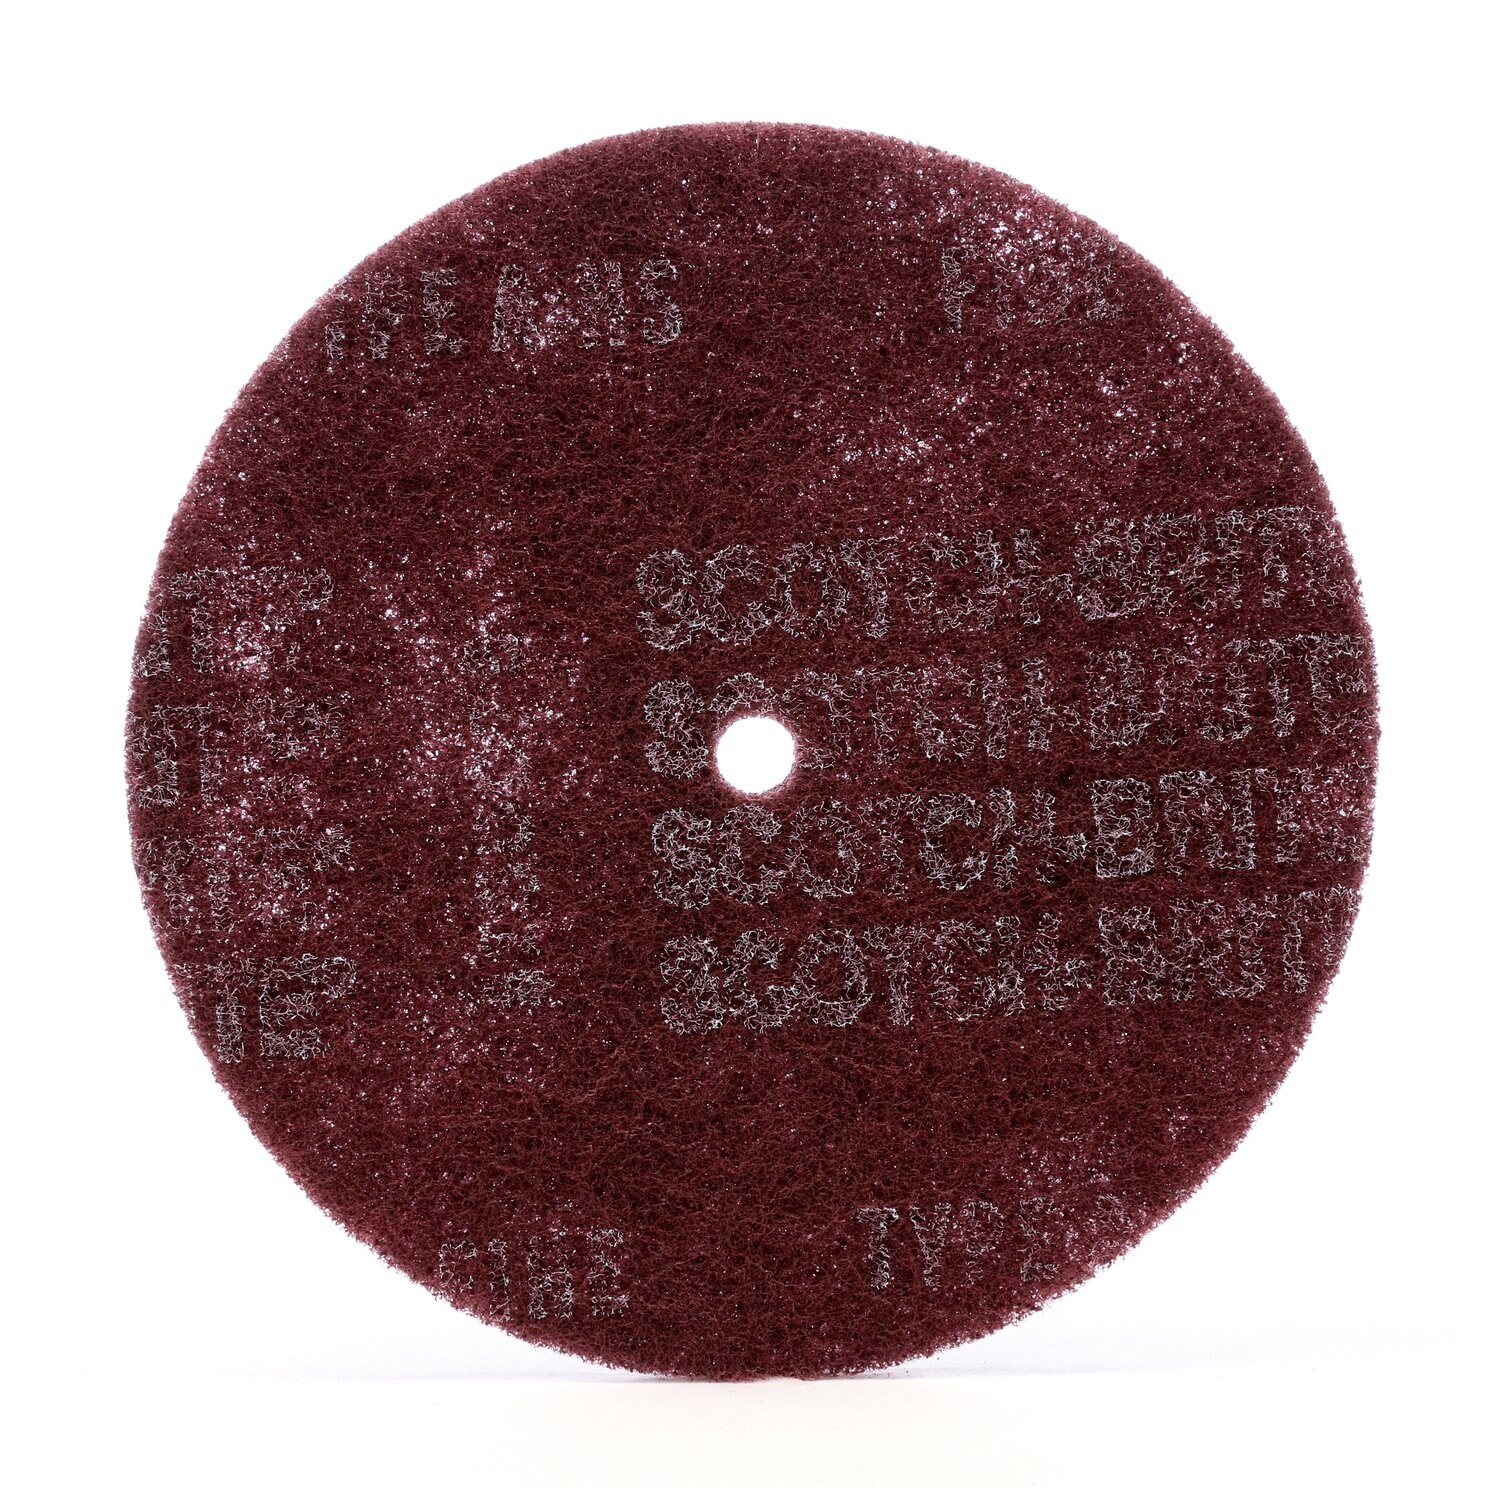 7010329034 - Scotch-Brite High Strength Disc, HS-DC, A/O Medium, 8 in x 5/8 in, 50
ea/Case